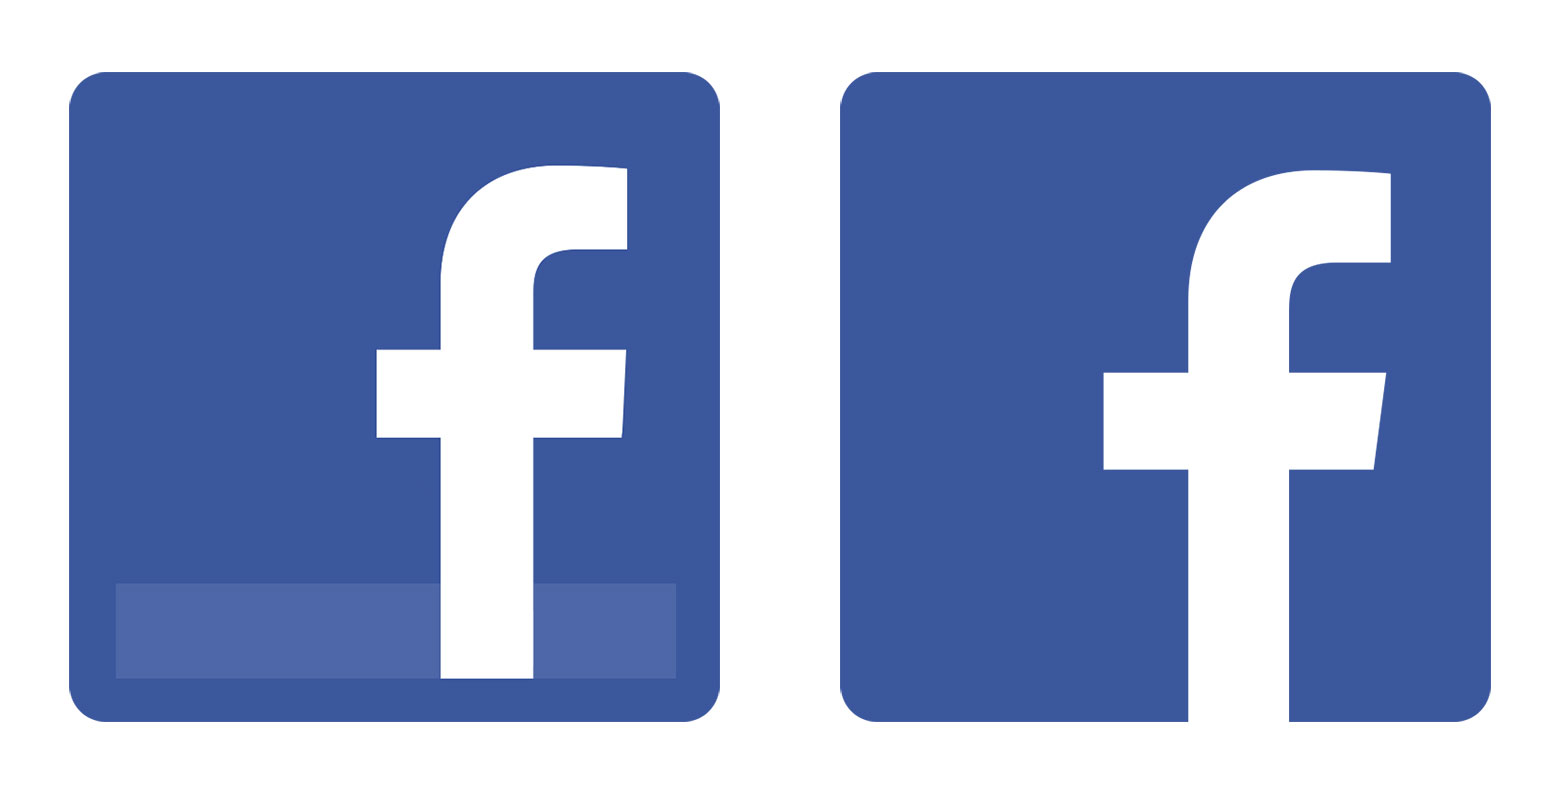 Facebook redesign | Webdesigner Depot